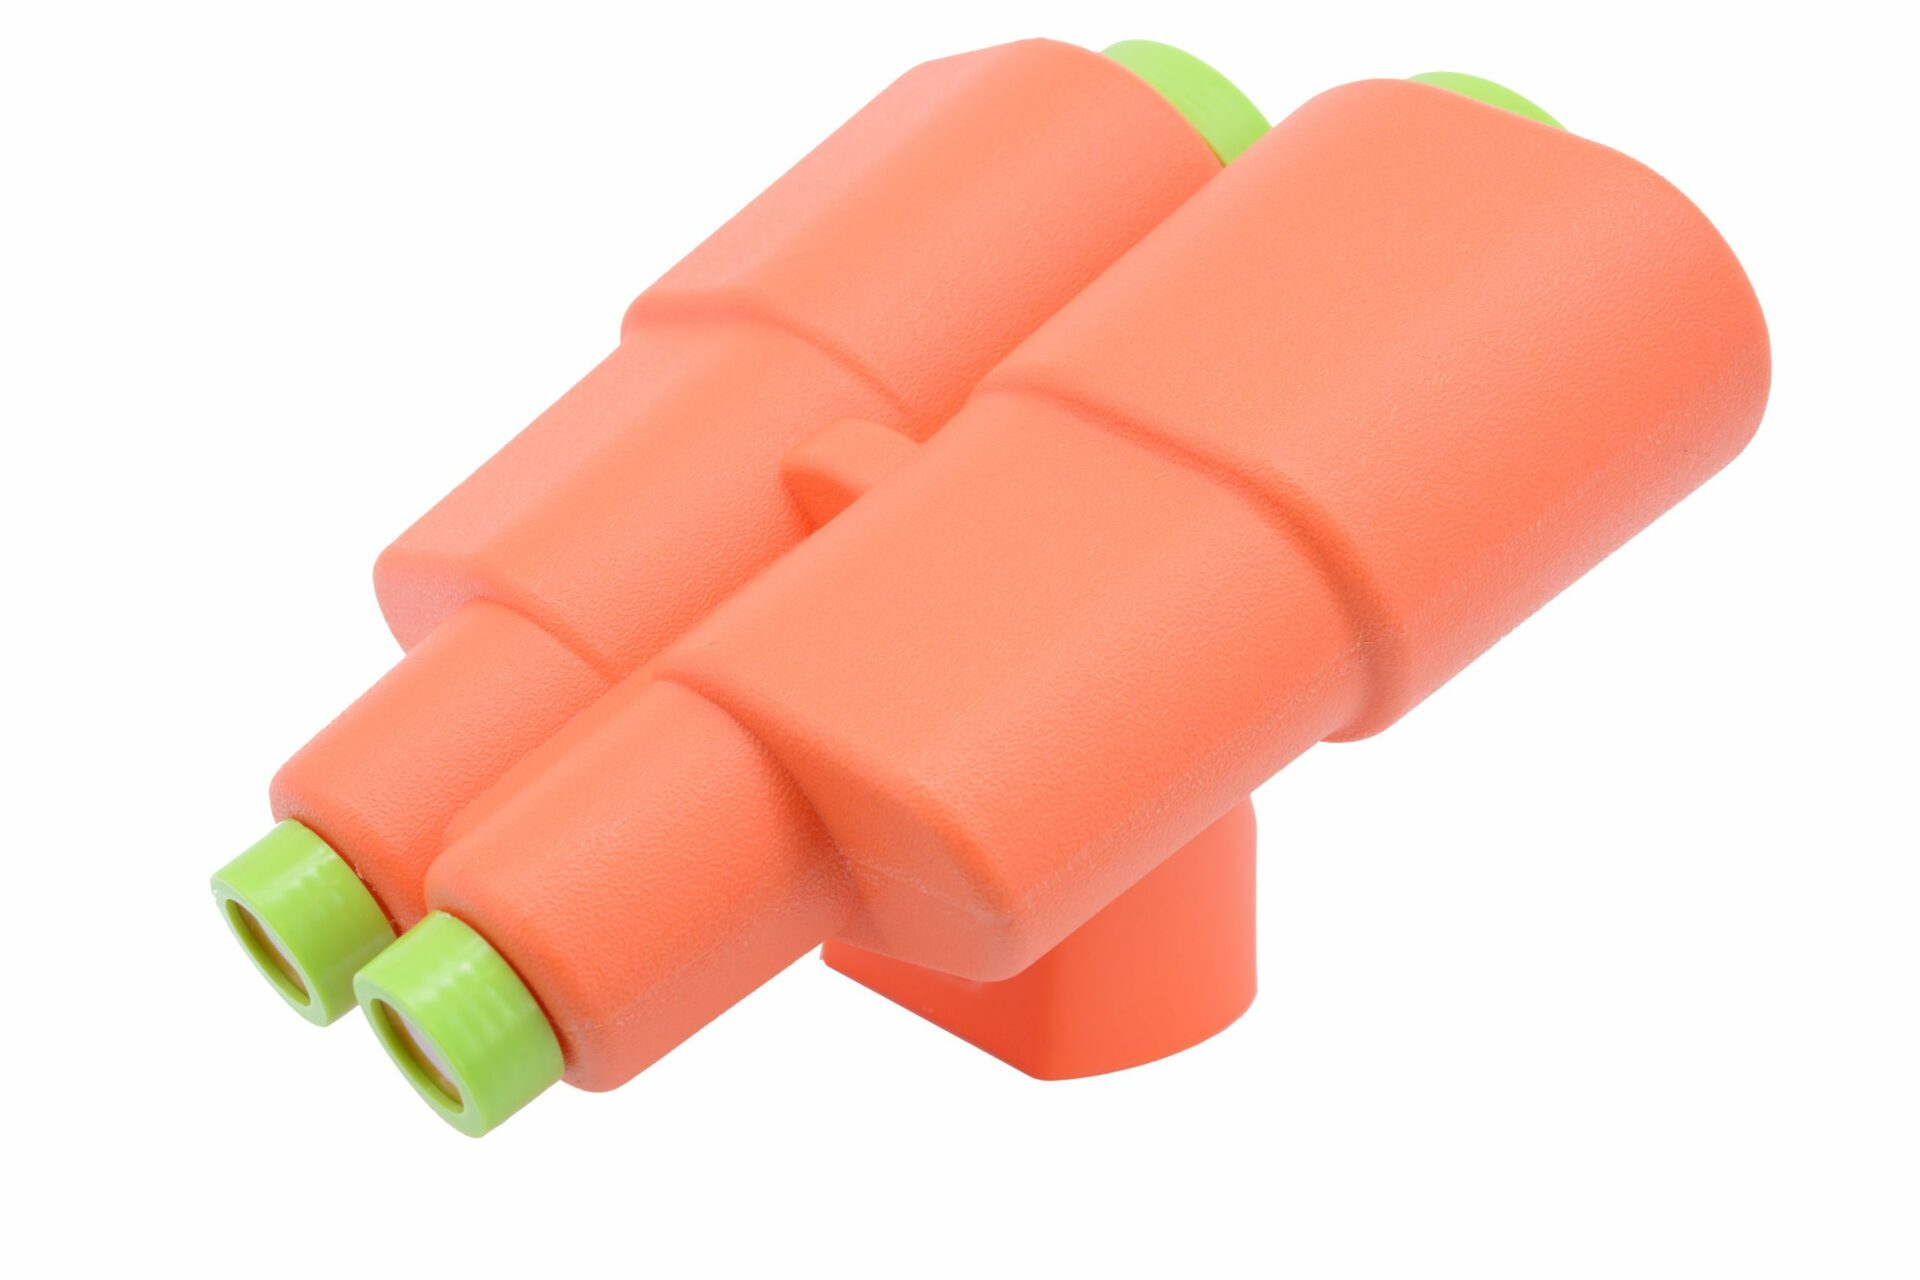 Rotaļlieta – binoklis (oranžā krāsā)